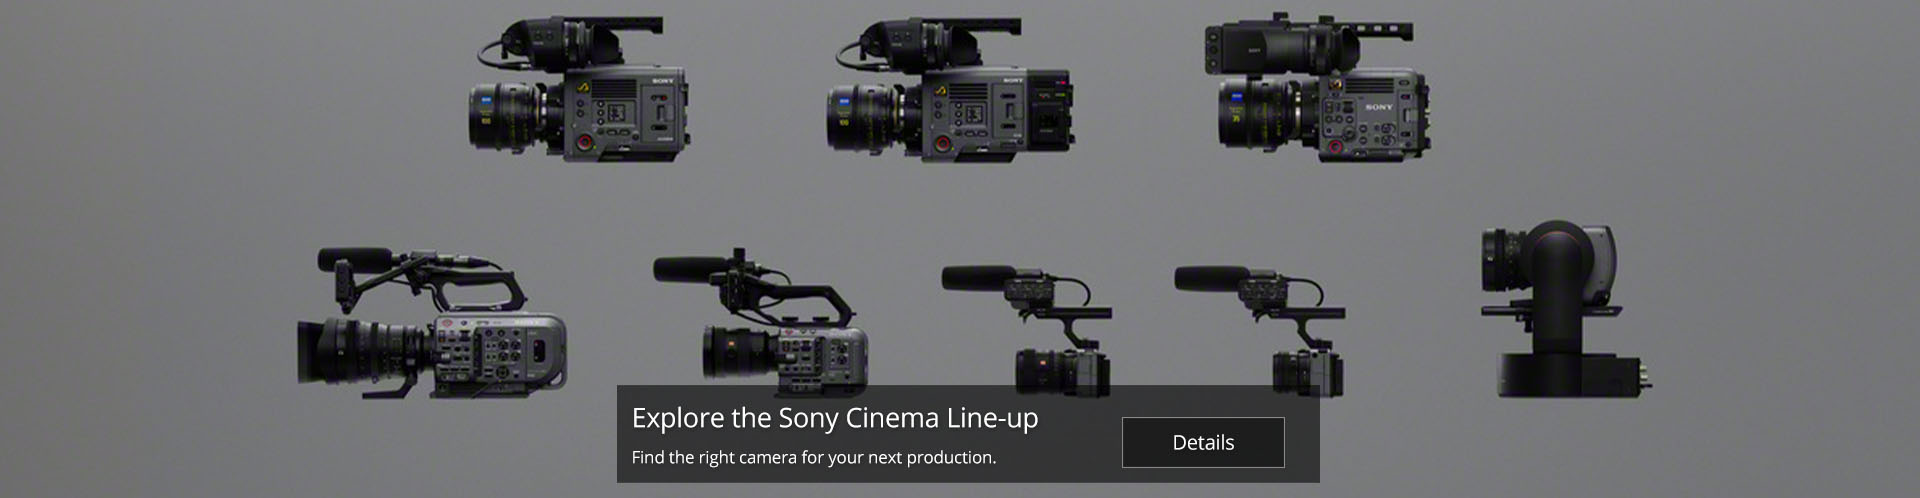 Sony Cinema Lineup